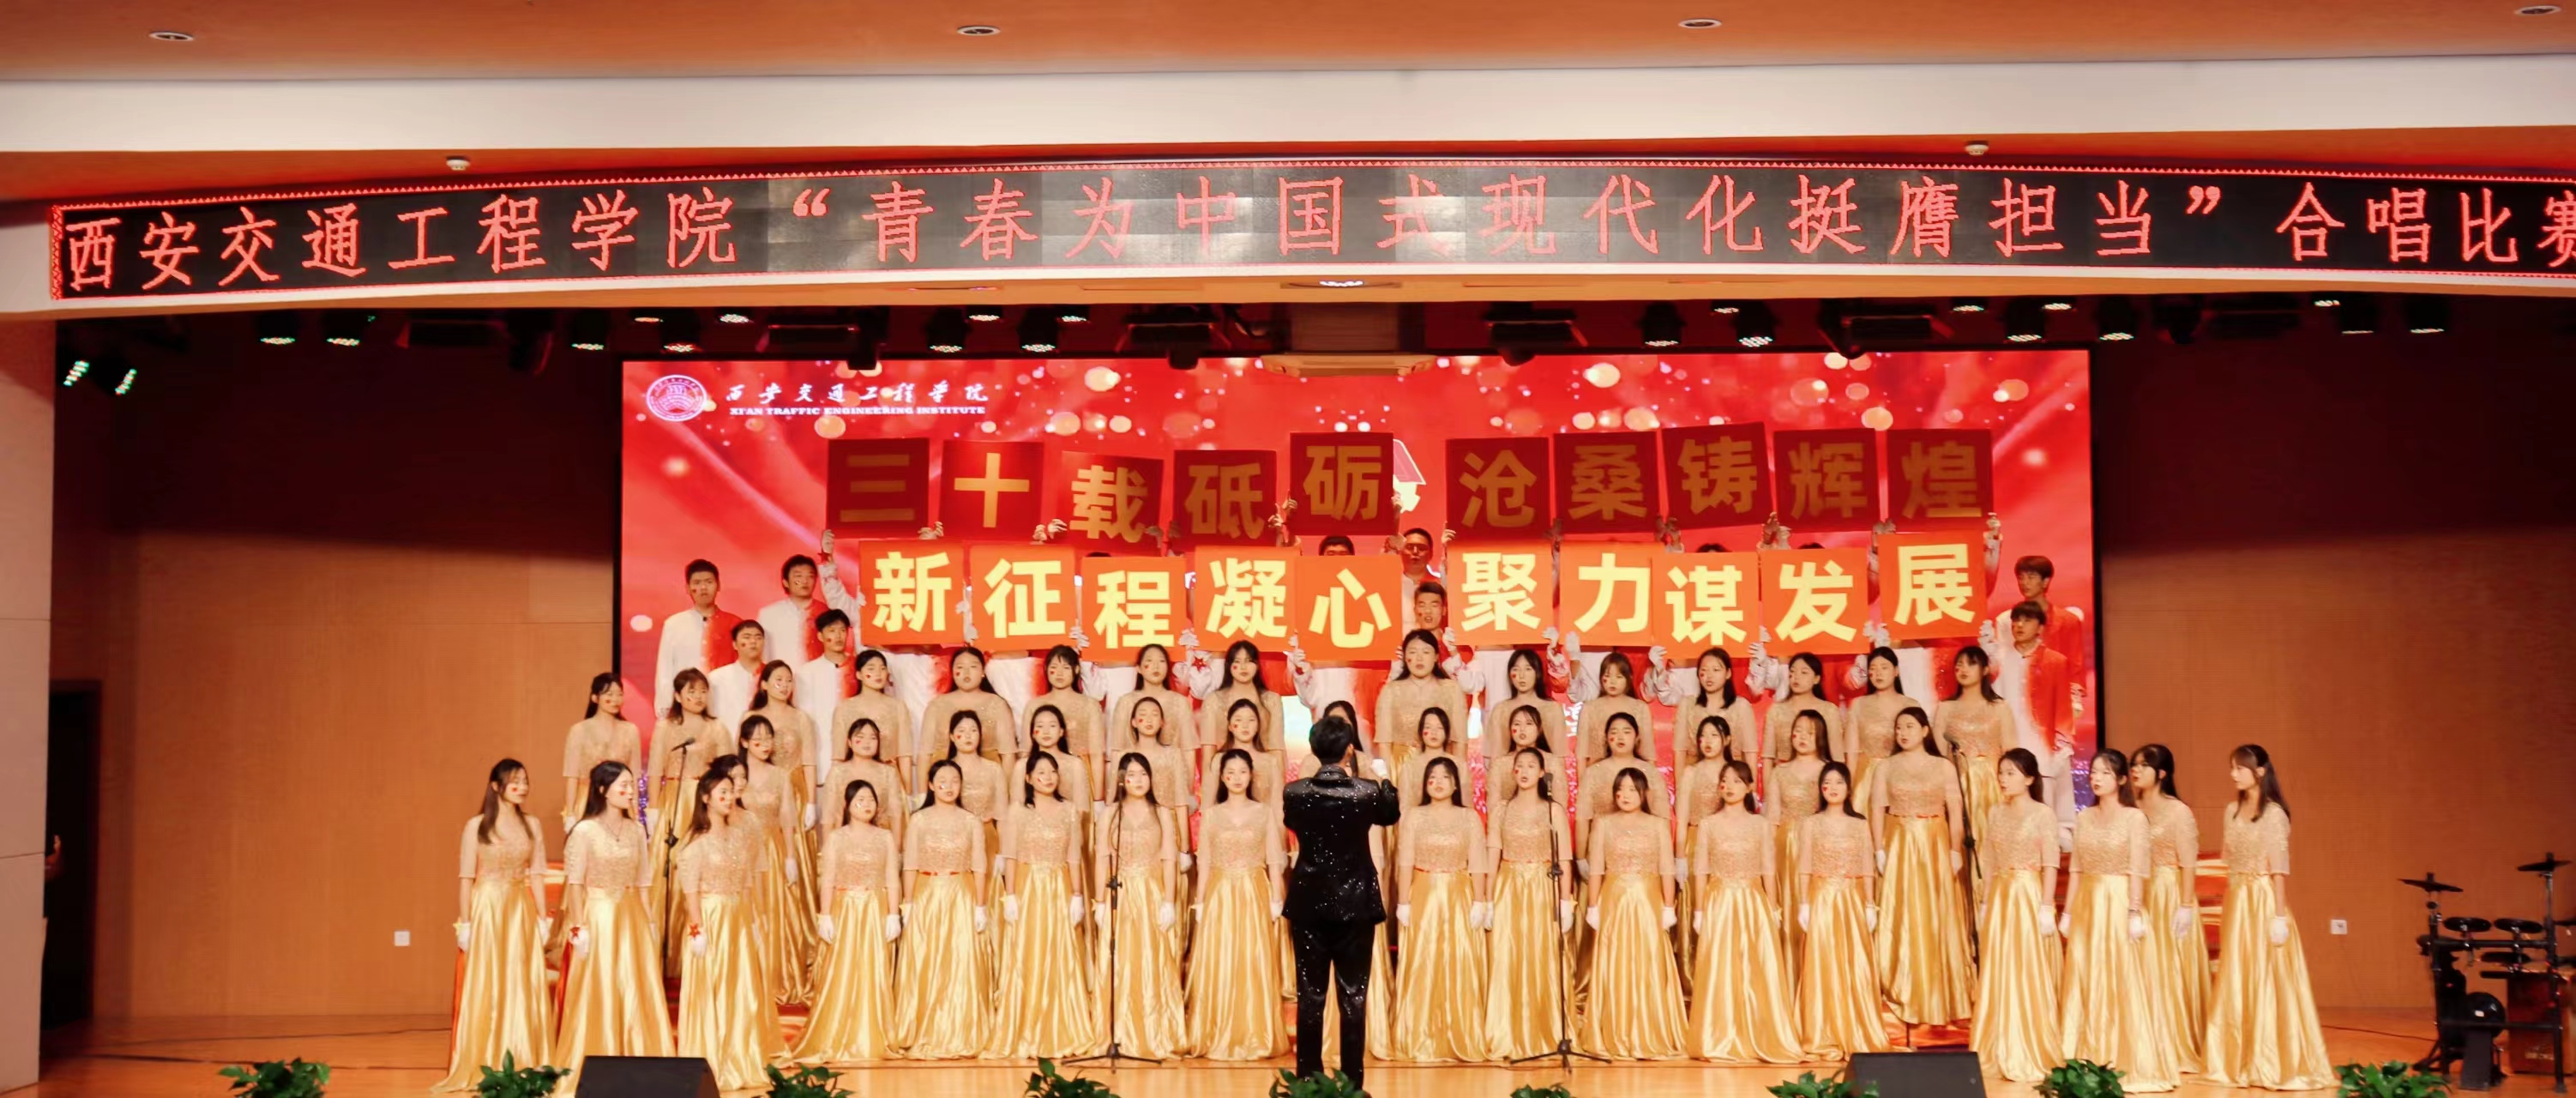 我校举办青春为中国式现代化挺膺担当合唱比赛 西安交通工程学院